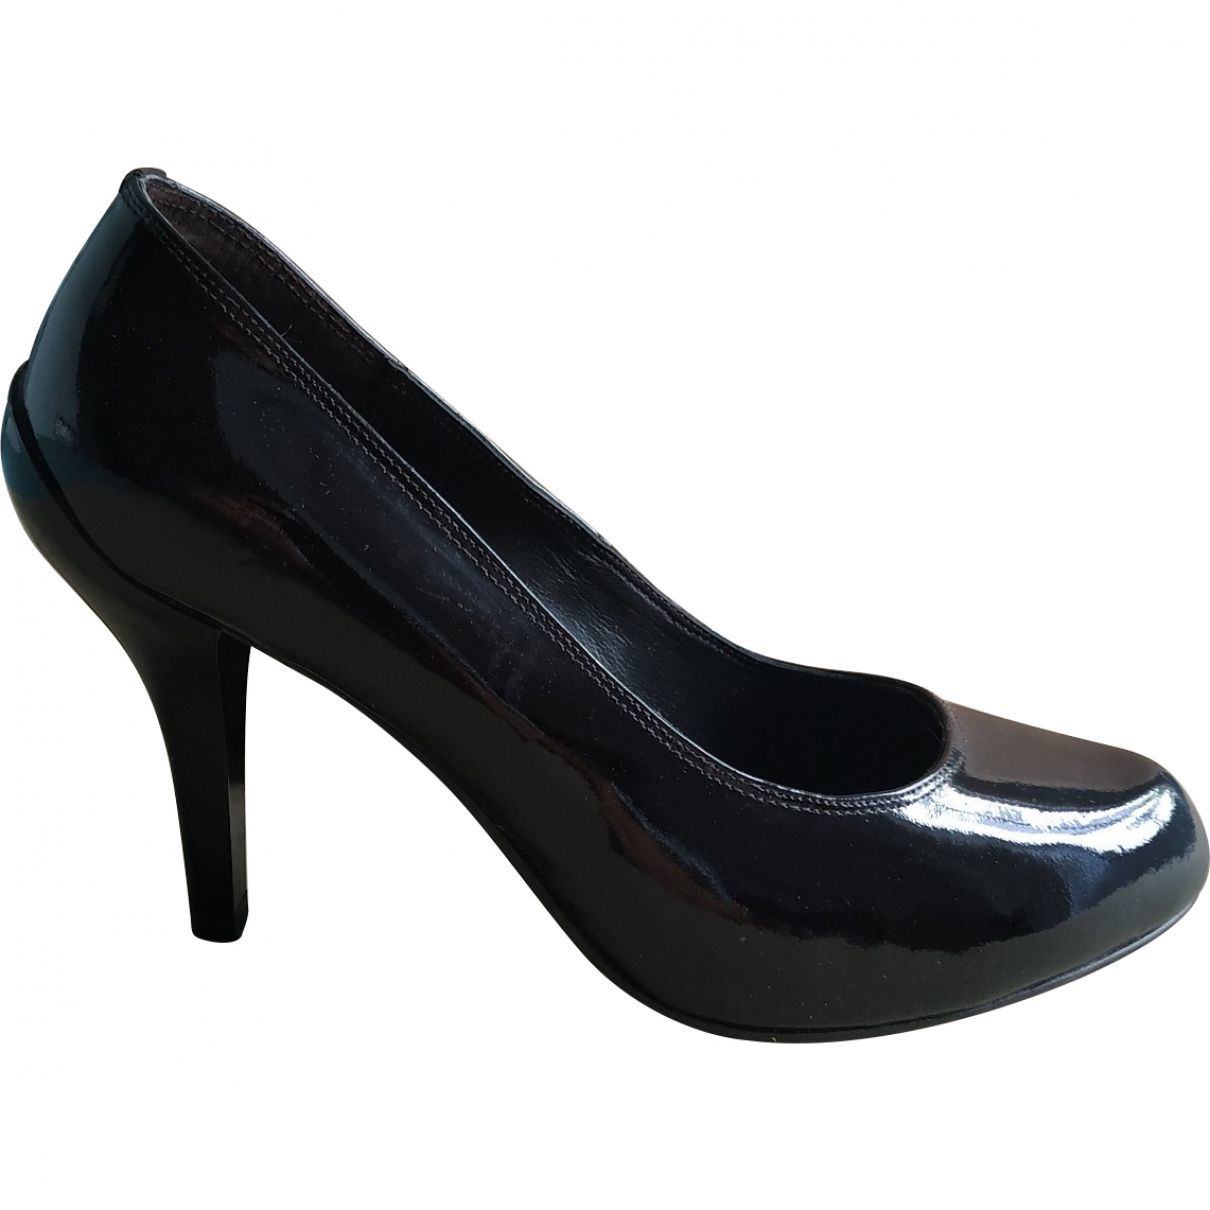 Patent leather heels Lola Cruz